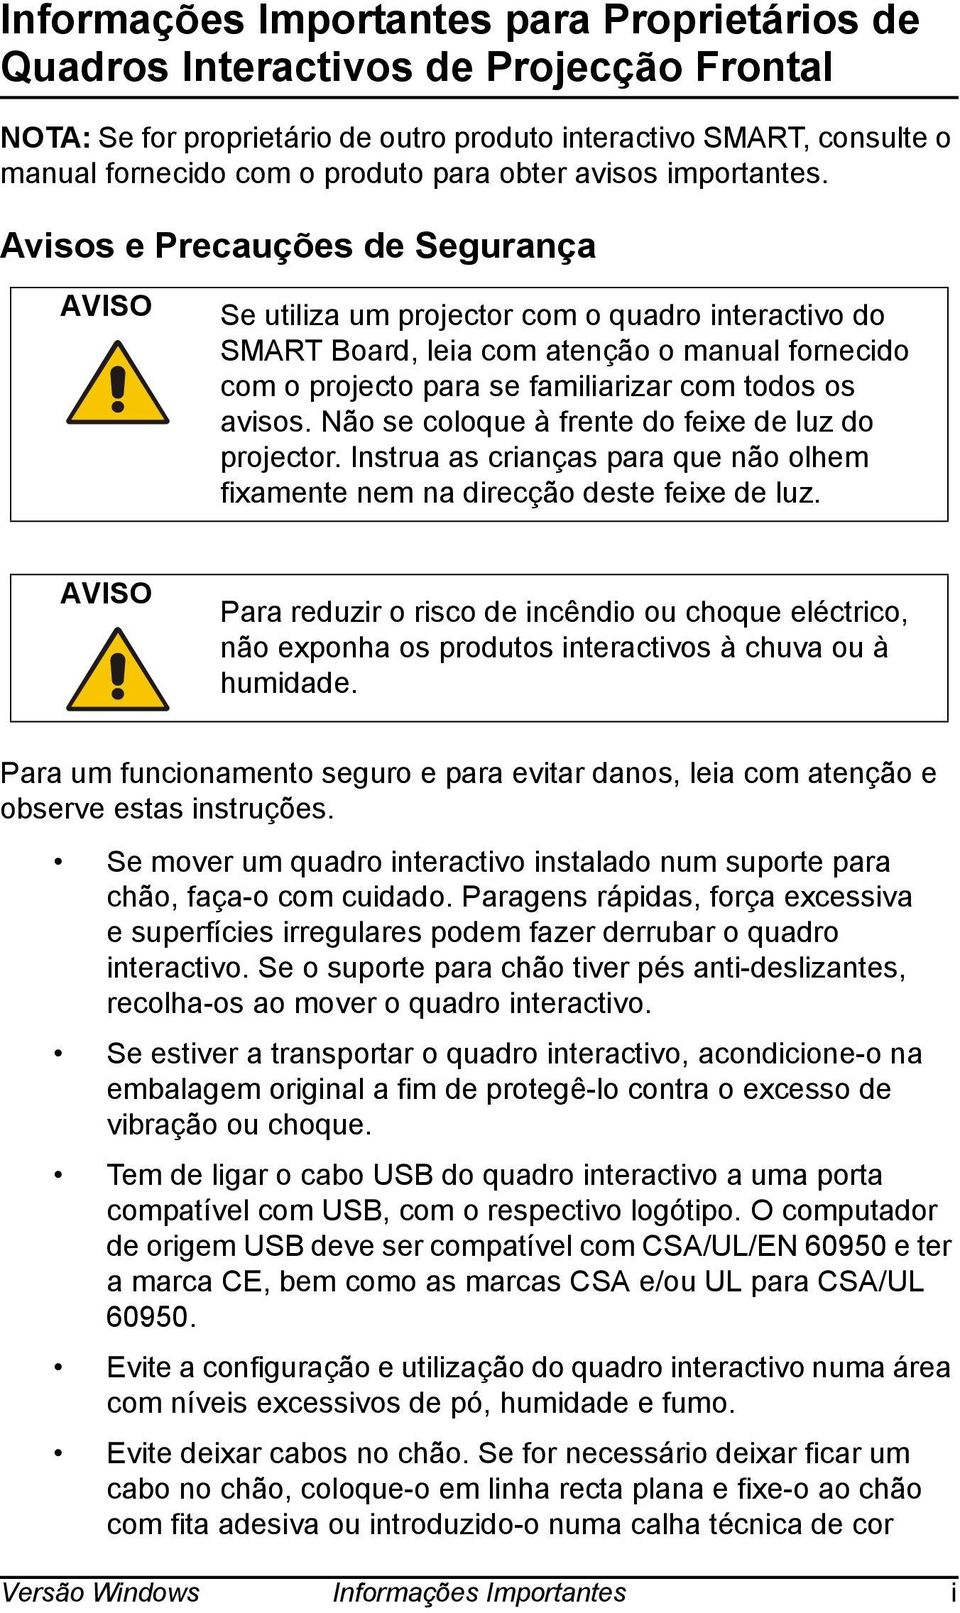 Avisos e Precauções de Segurança AVISO Se utiliza um projector com o quadro interactivo do SMART Board, leia com atenção o manual fornecido com o projecto para se familiarizar com todos os avisos.